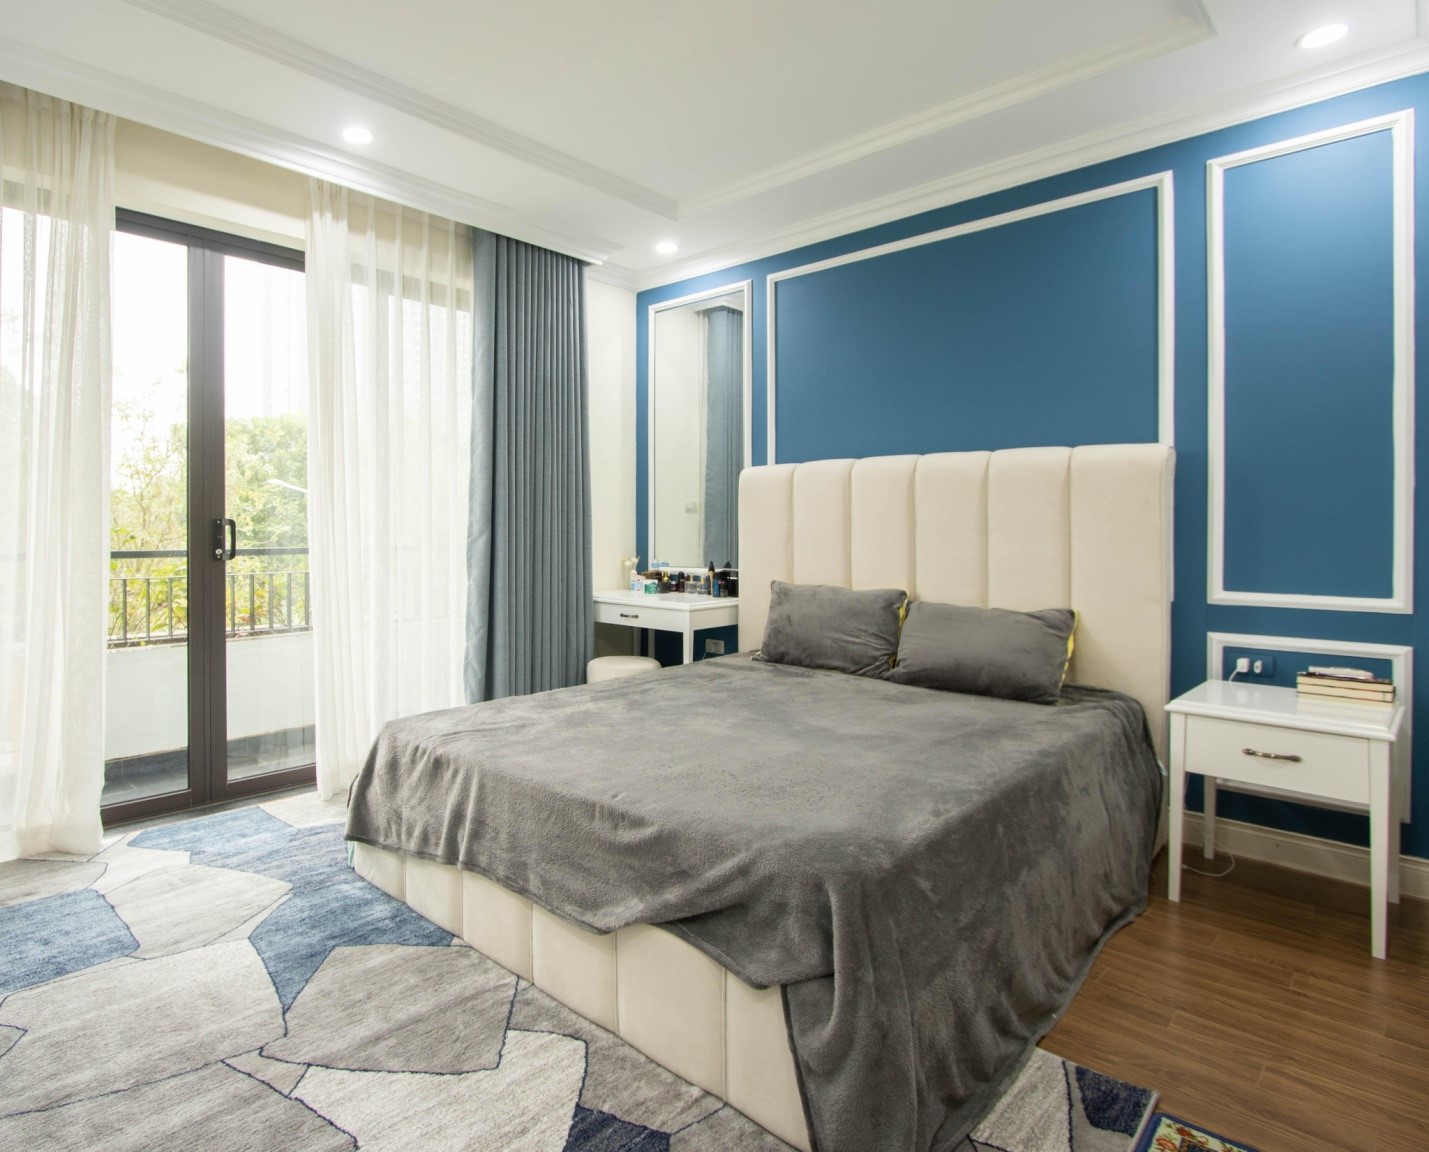 Gam màu xanh dương kết hợp ăn ý với sắc xám và trắng mang đến cảm giác thư giãn, bình yên cho không gian ngủ nghỉ.